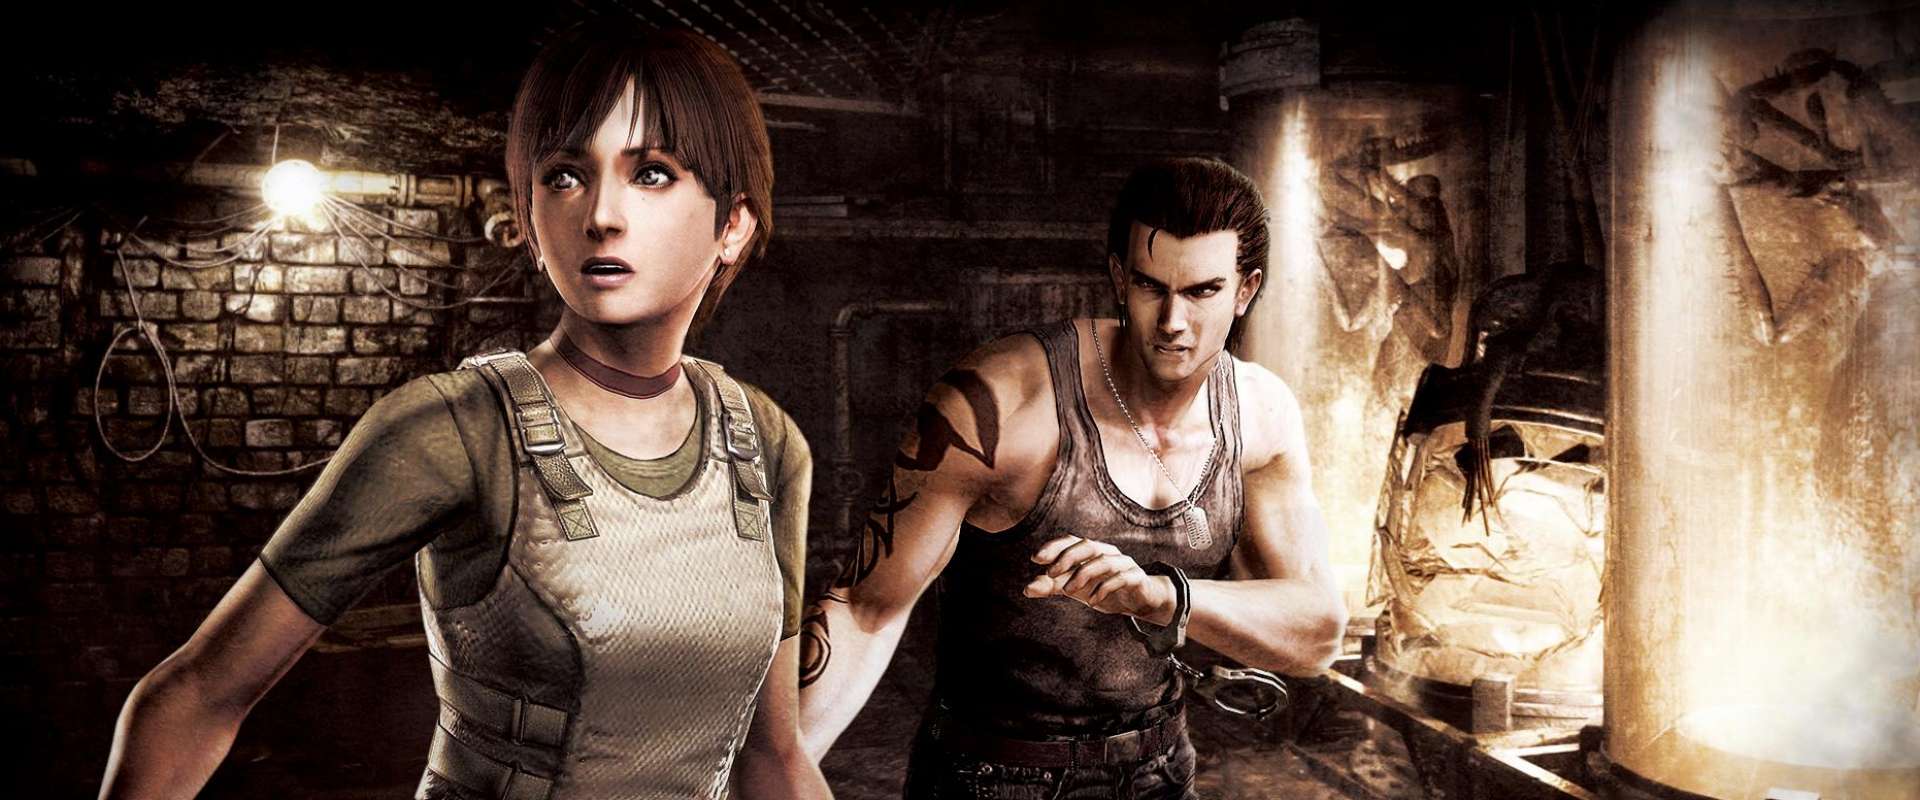 Resident Evil HD Remaster - Tribo Gamer